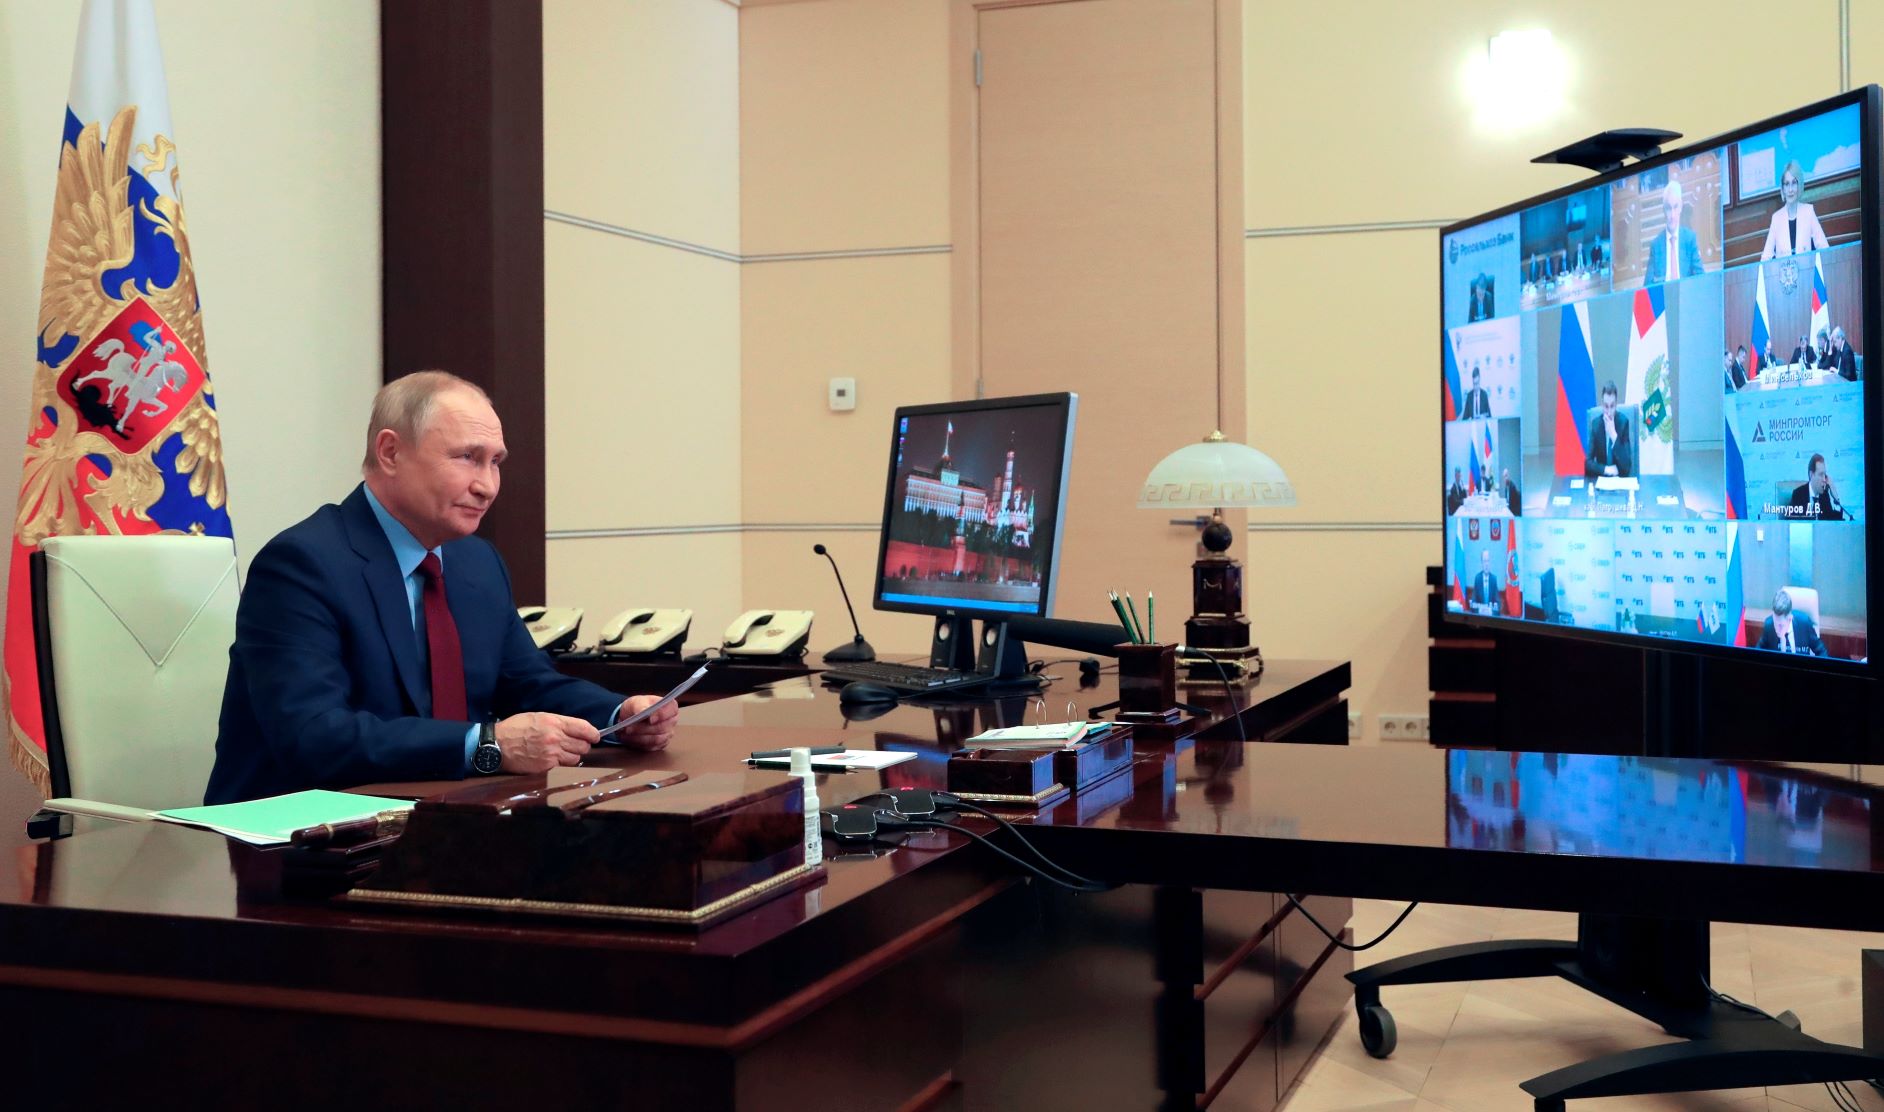 الرئيس الروسي فلاديمير بوتين يدير مؤتمر بالفيديو حول صناعتي الزراعة والصيد، من مقر رئاسته خارج موسكو. بتاريخ 05 إبريل 2022 